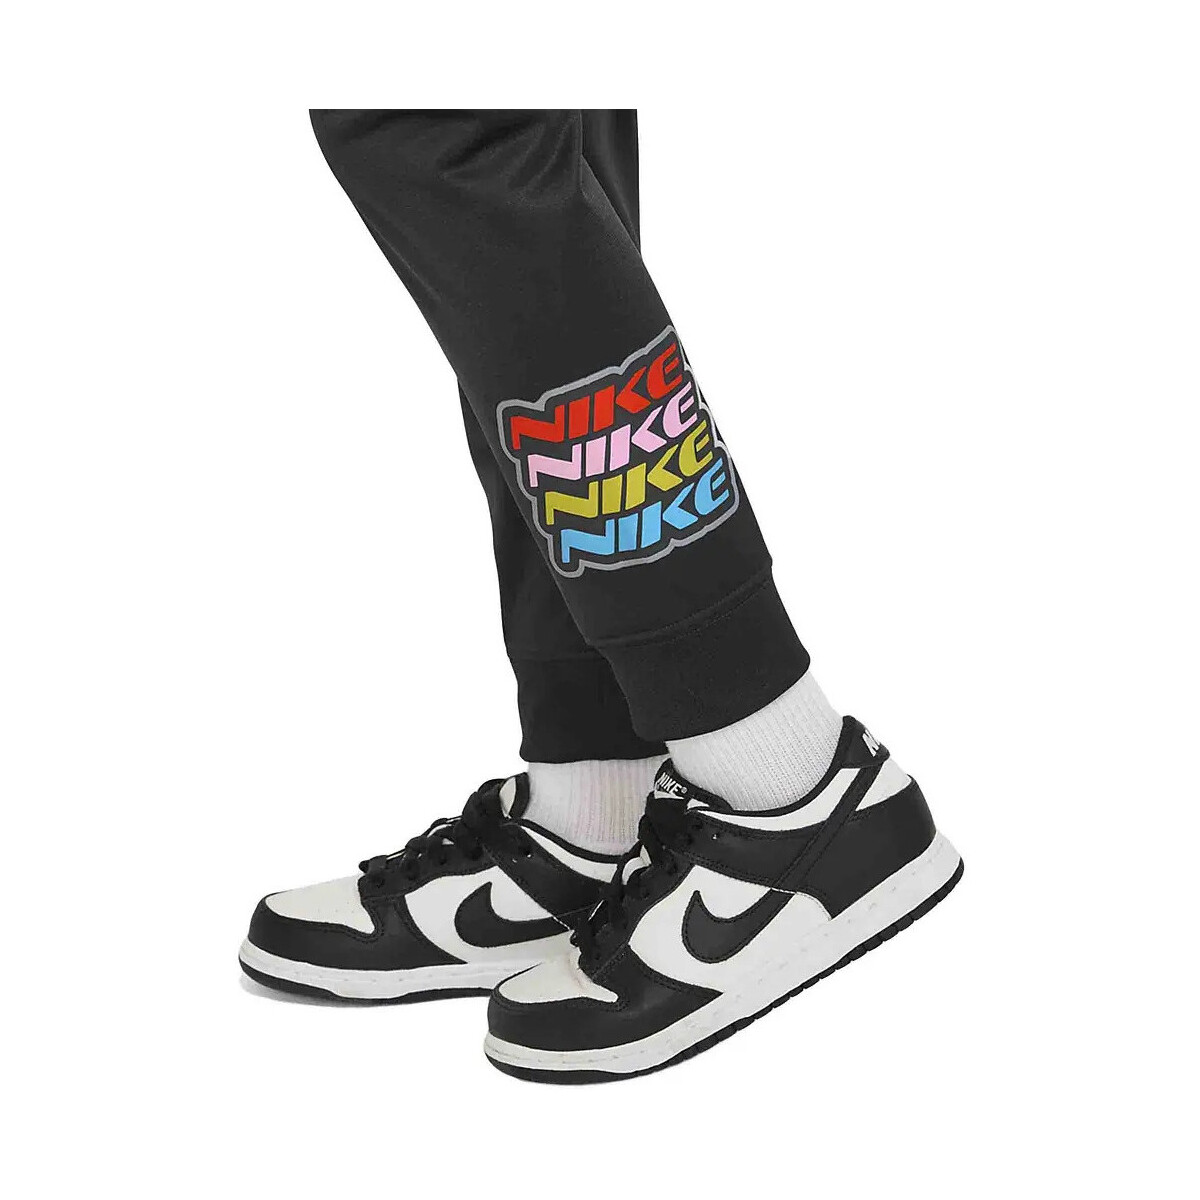 Nike Noir KSA Tricot RFN94Neu